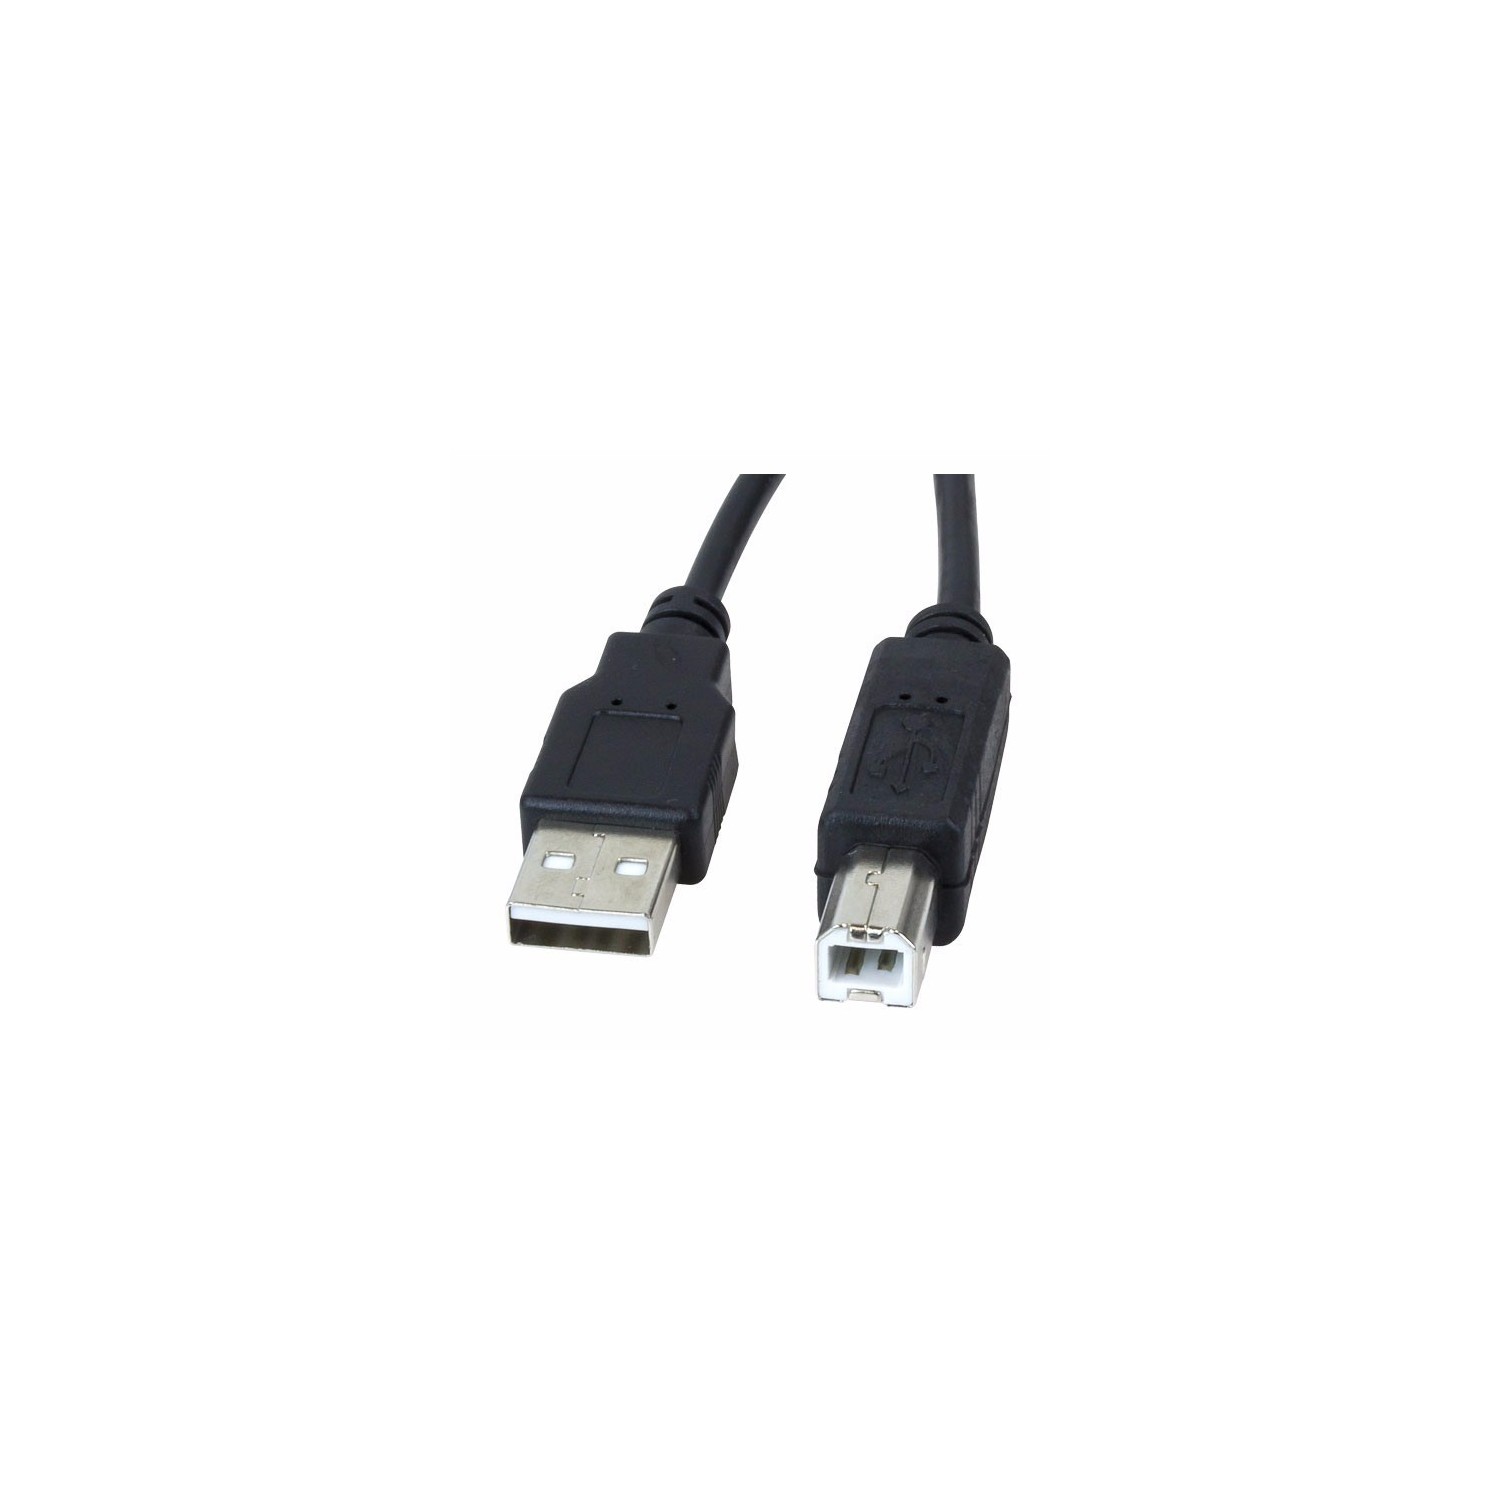 CABLE IMPRESORA ESCANER - USB 2.0AM-BM NEGRO